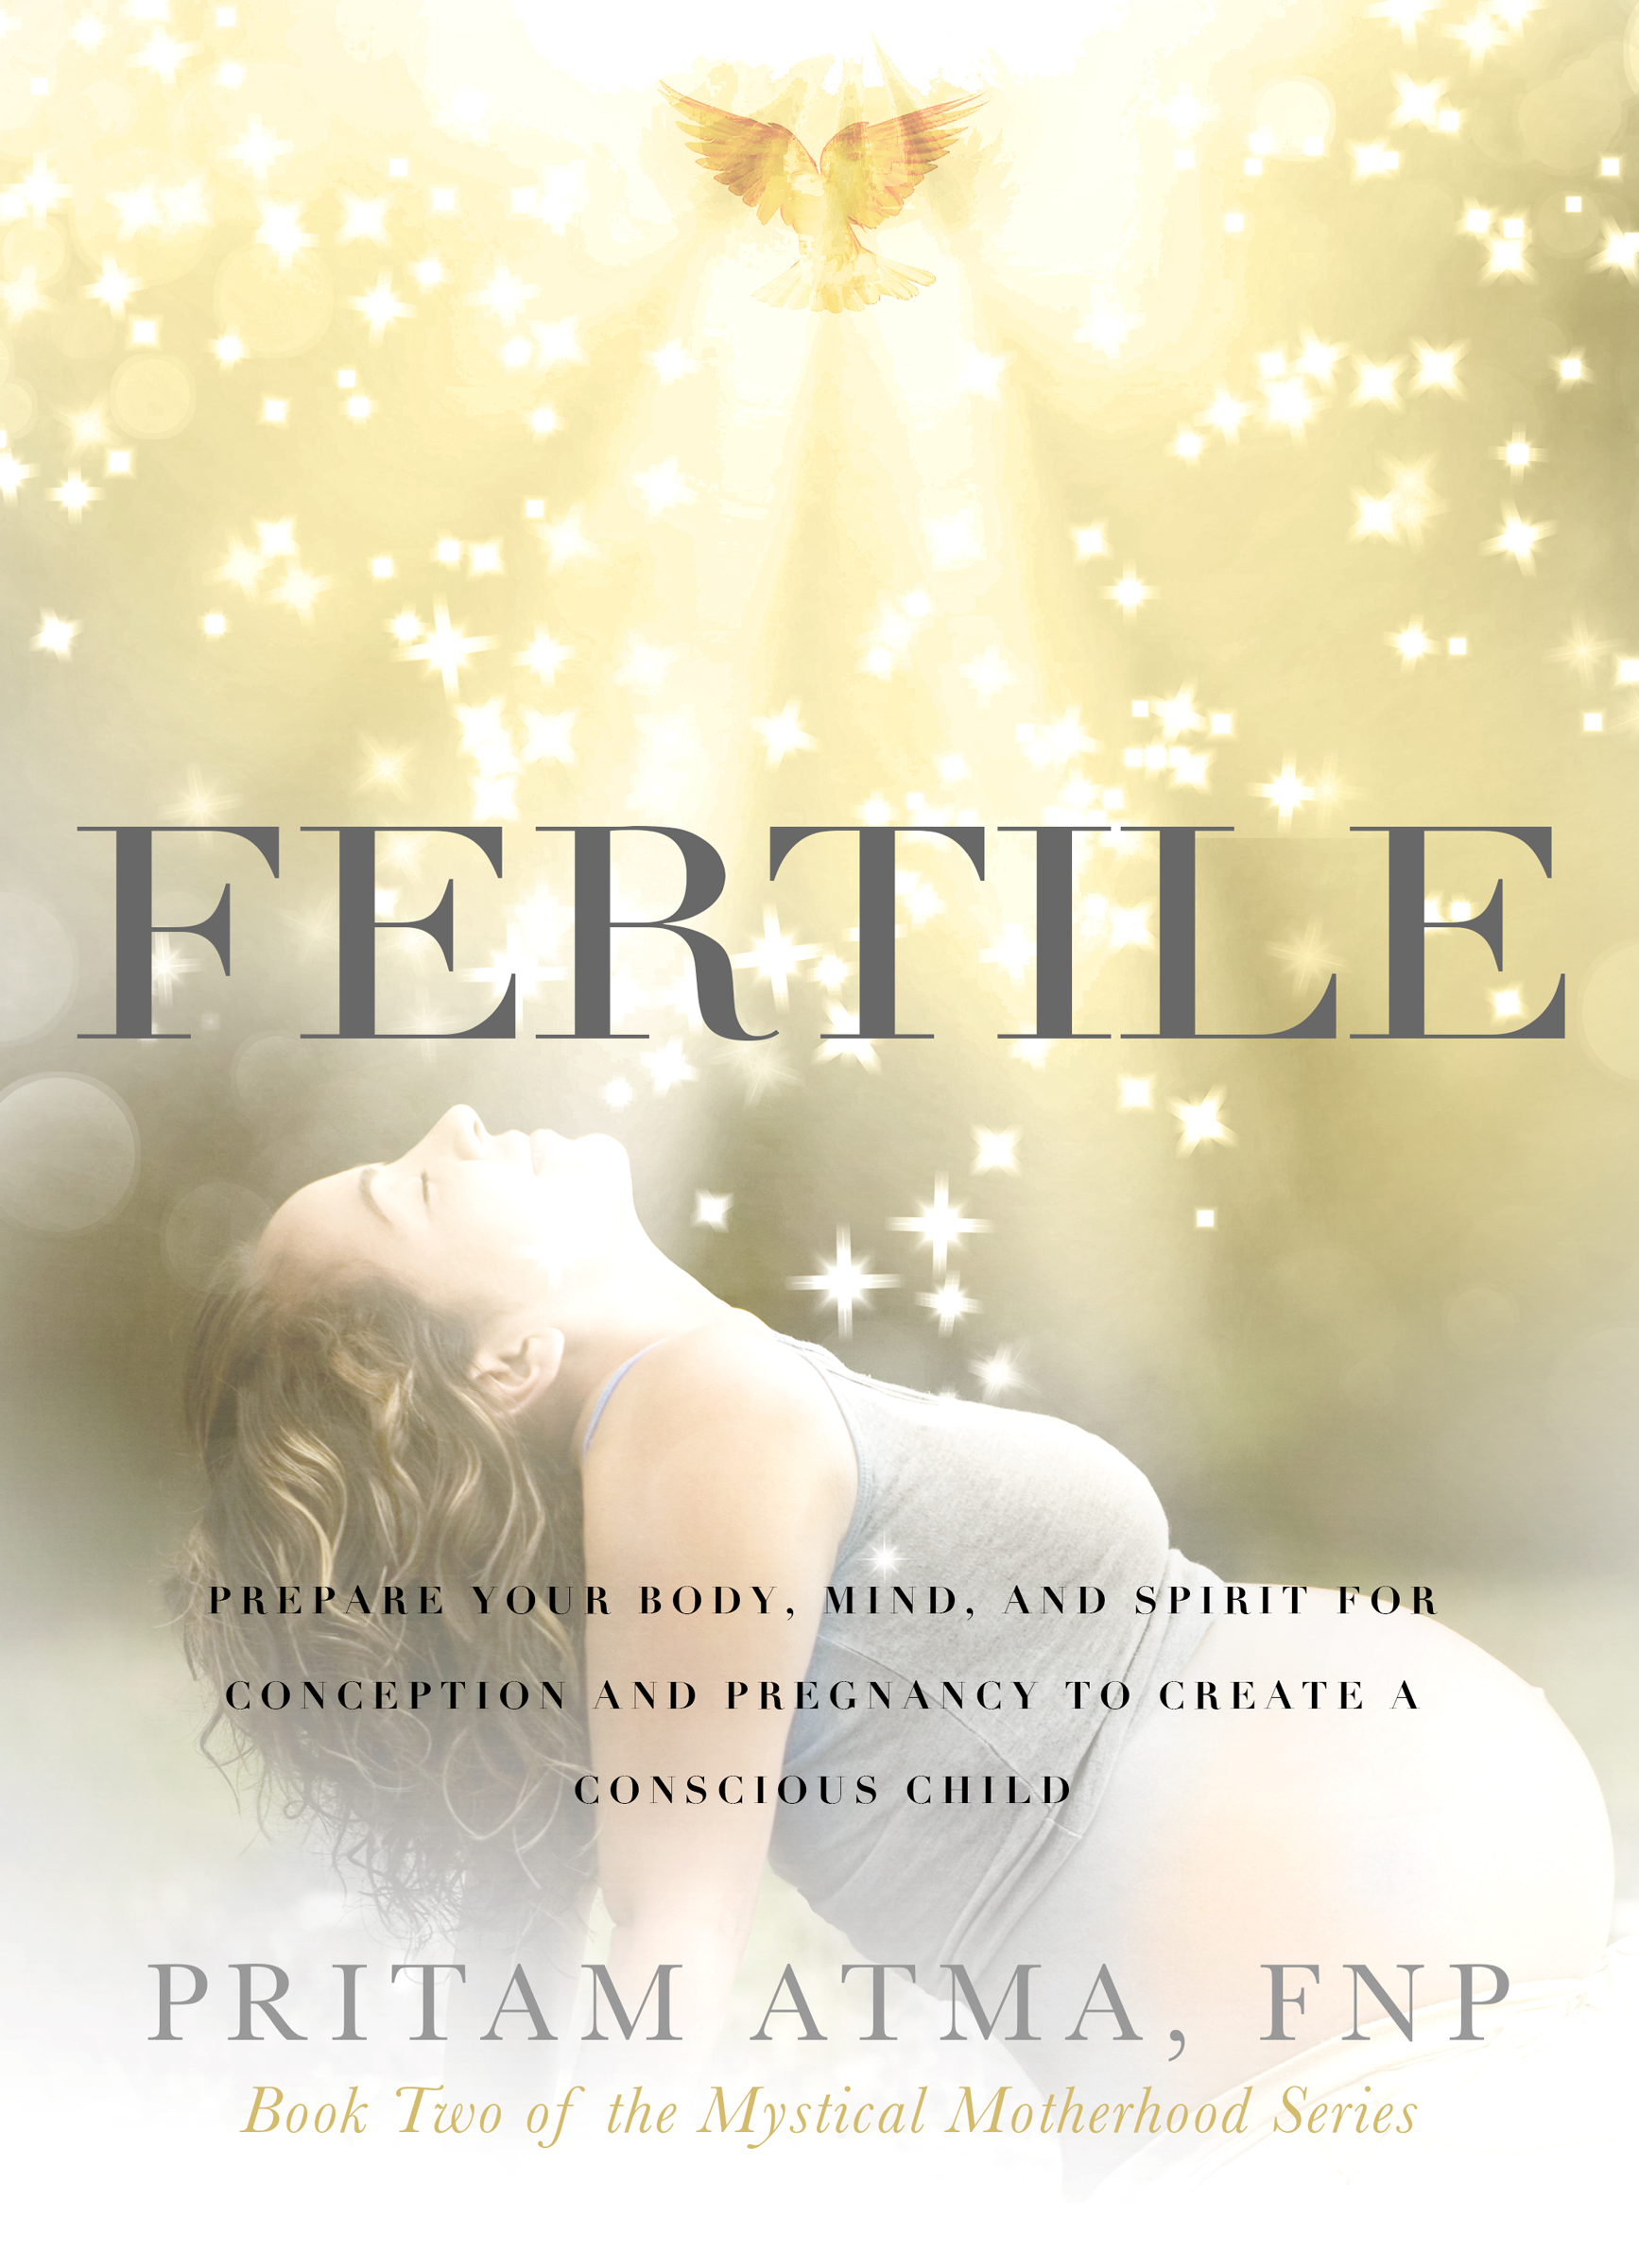 Fertile Book Cover by Pritam Atma